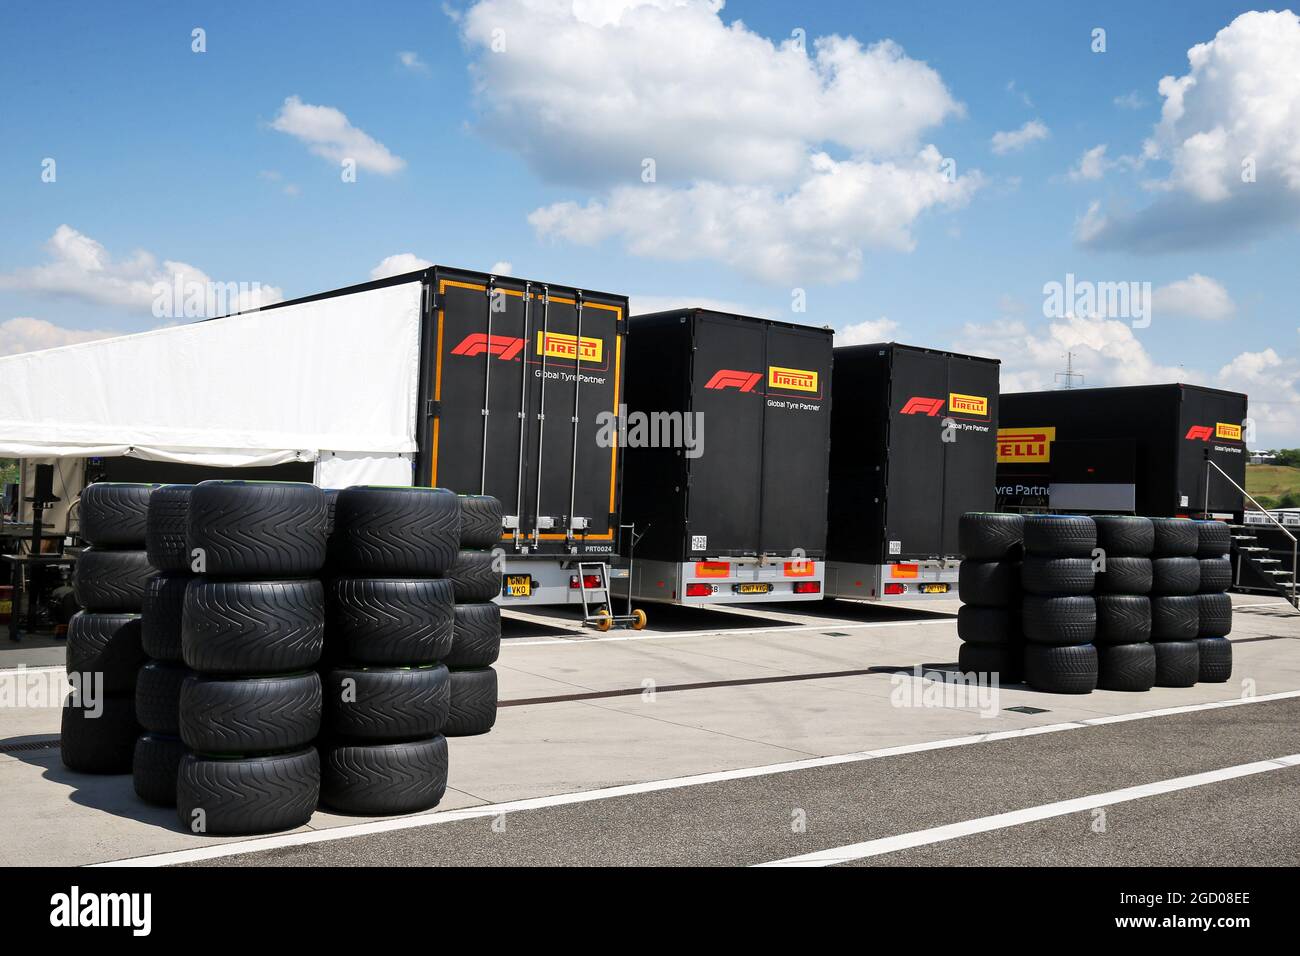 Camions Pirelli dans les enclos. Test des jeunes pilotes Formula One, jour  1, mercredi 17 juillet 2013. Silverstone, Angleterre Photo Stock - Alamy